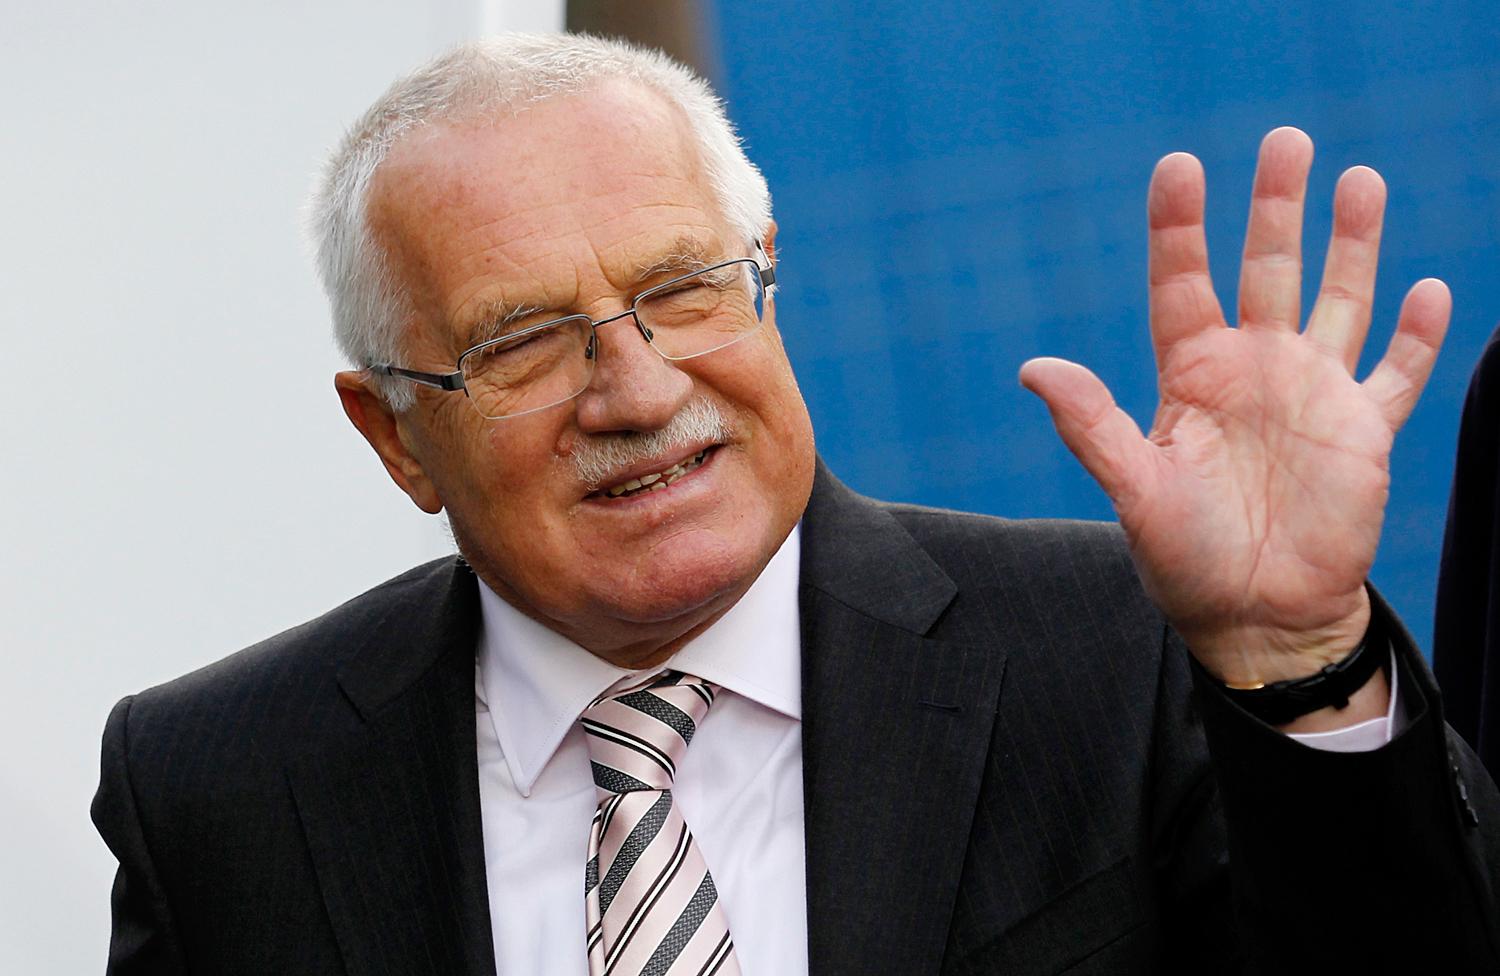 Václav Klaus még cseh elnökként egy 2011-es felvételen. Magánemberként nem hívják